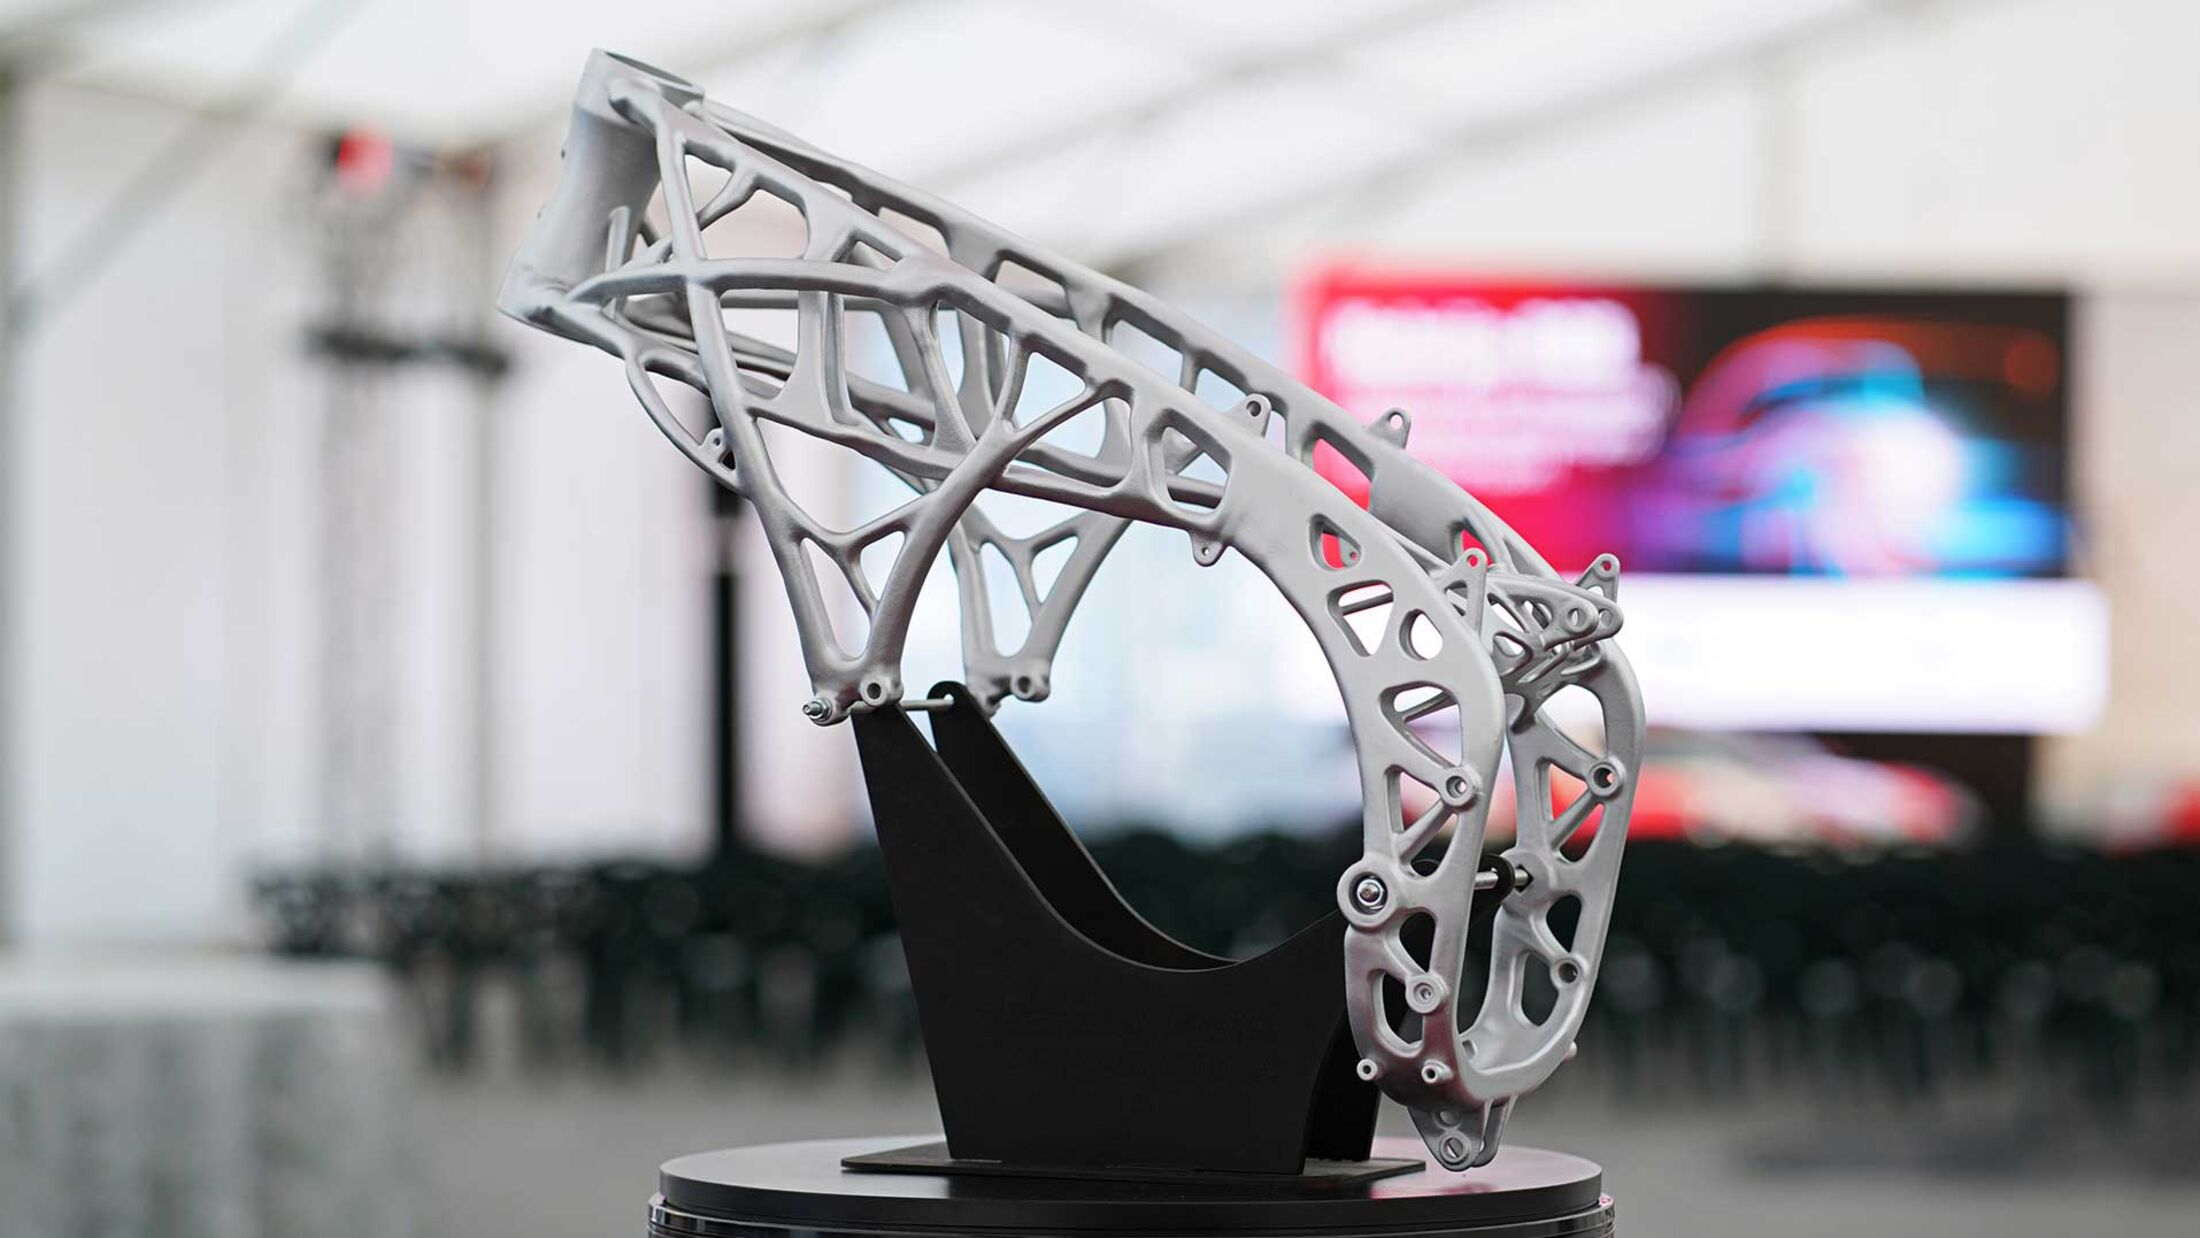 Stahlrahmen für Motorräder aus dem 3D-Drucker